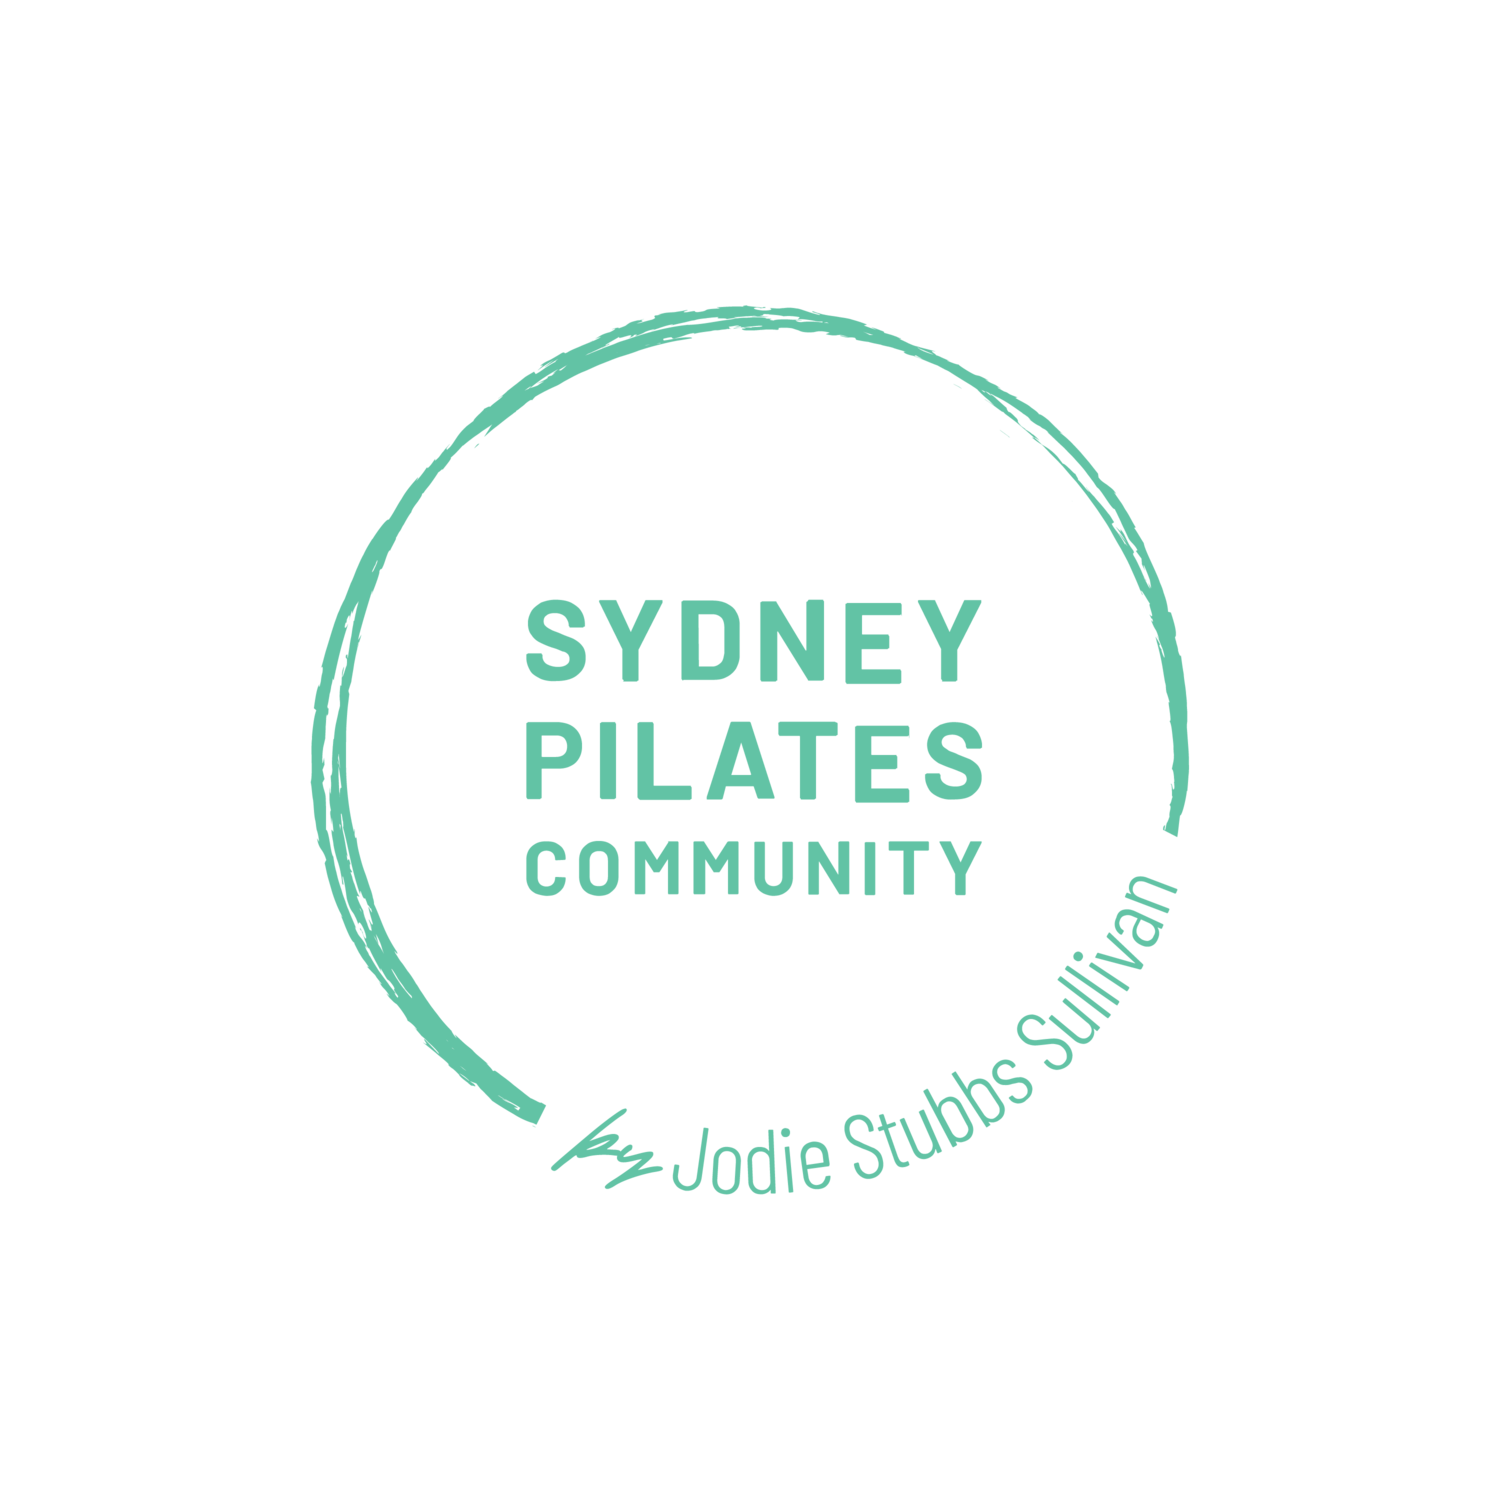 Sydney Pilates Community